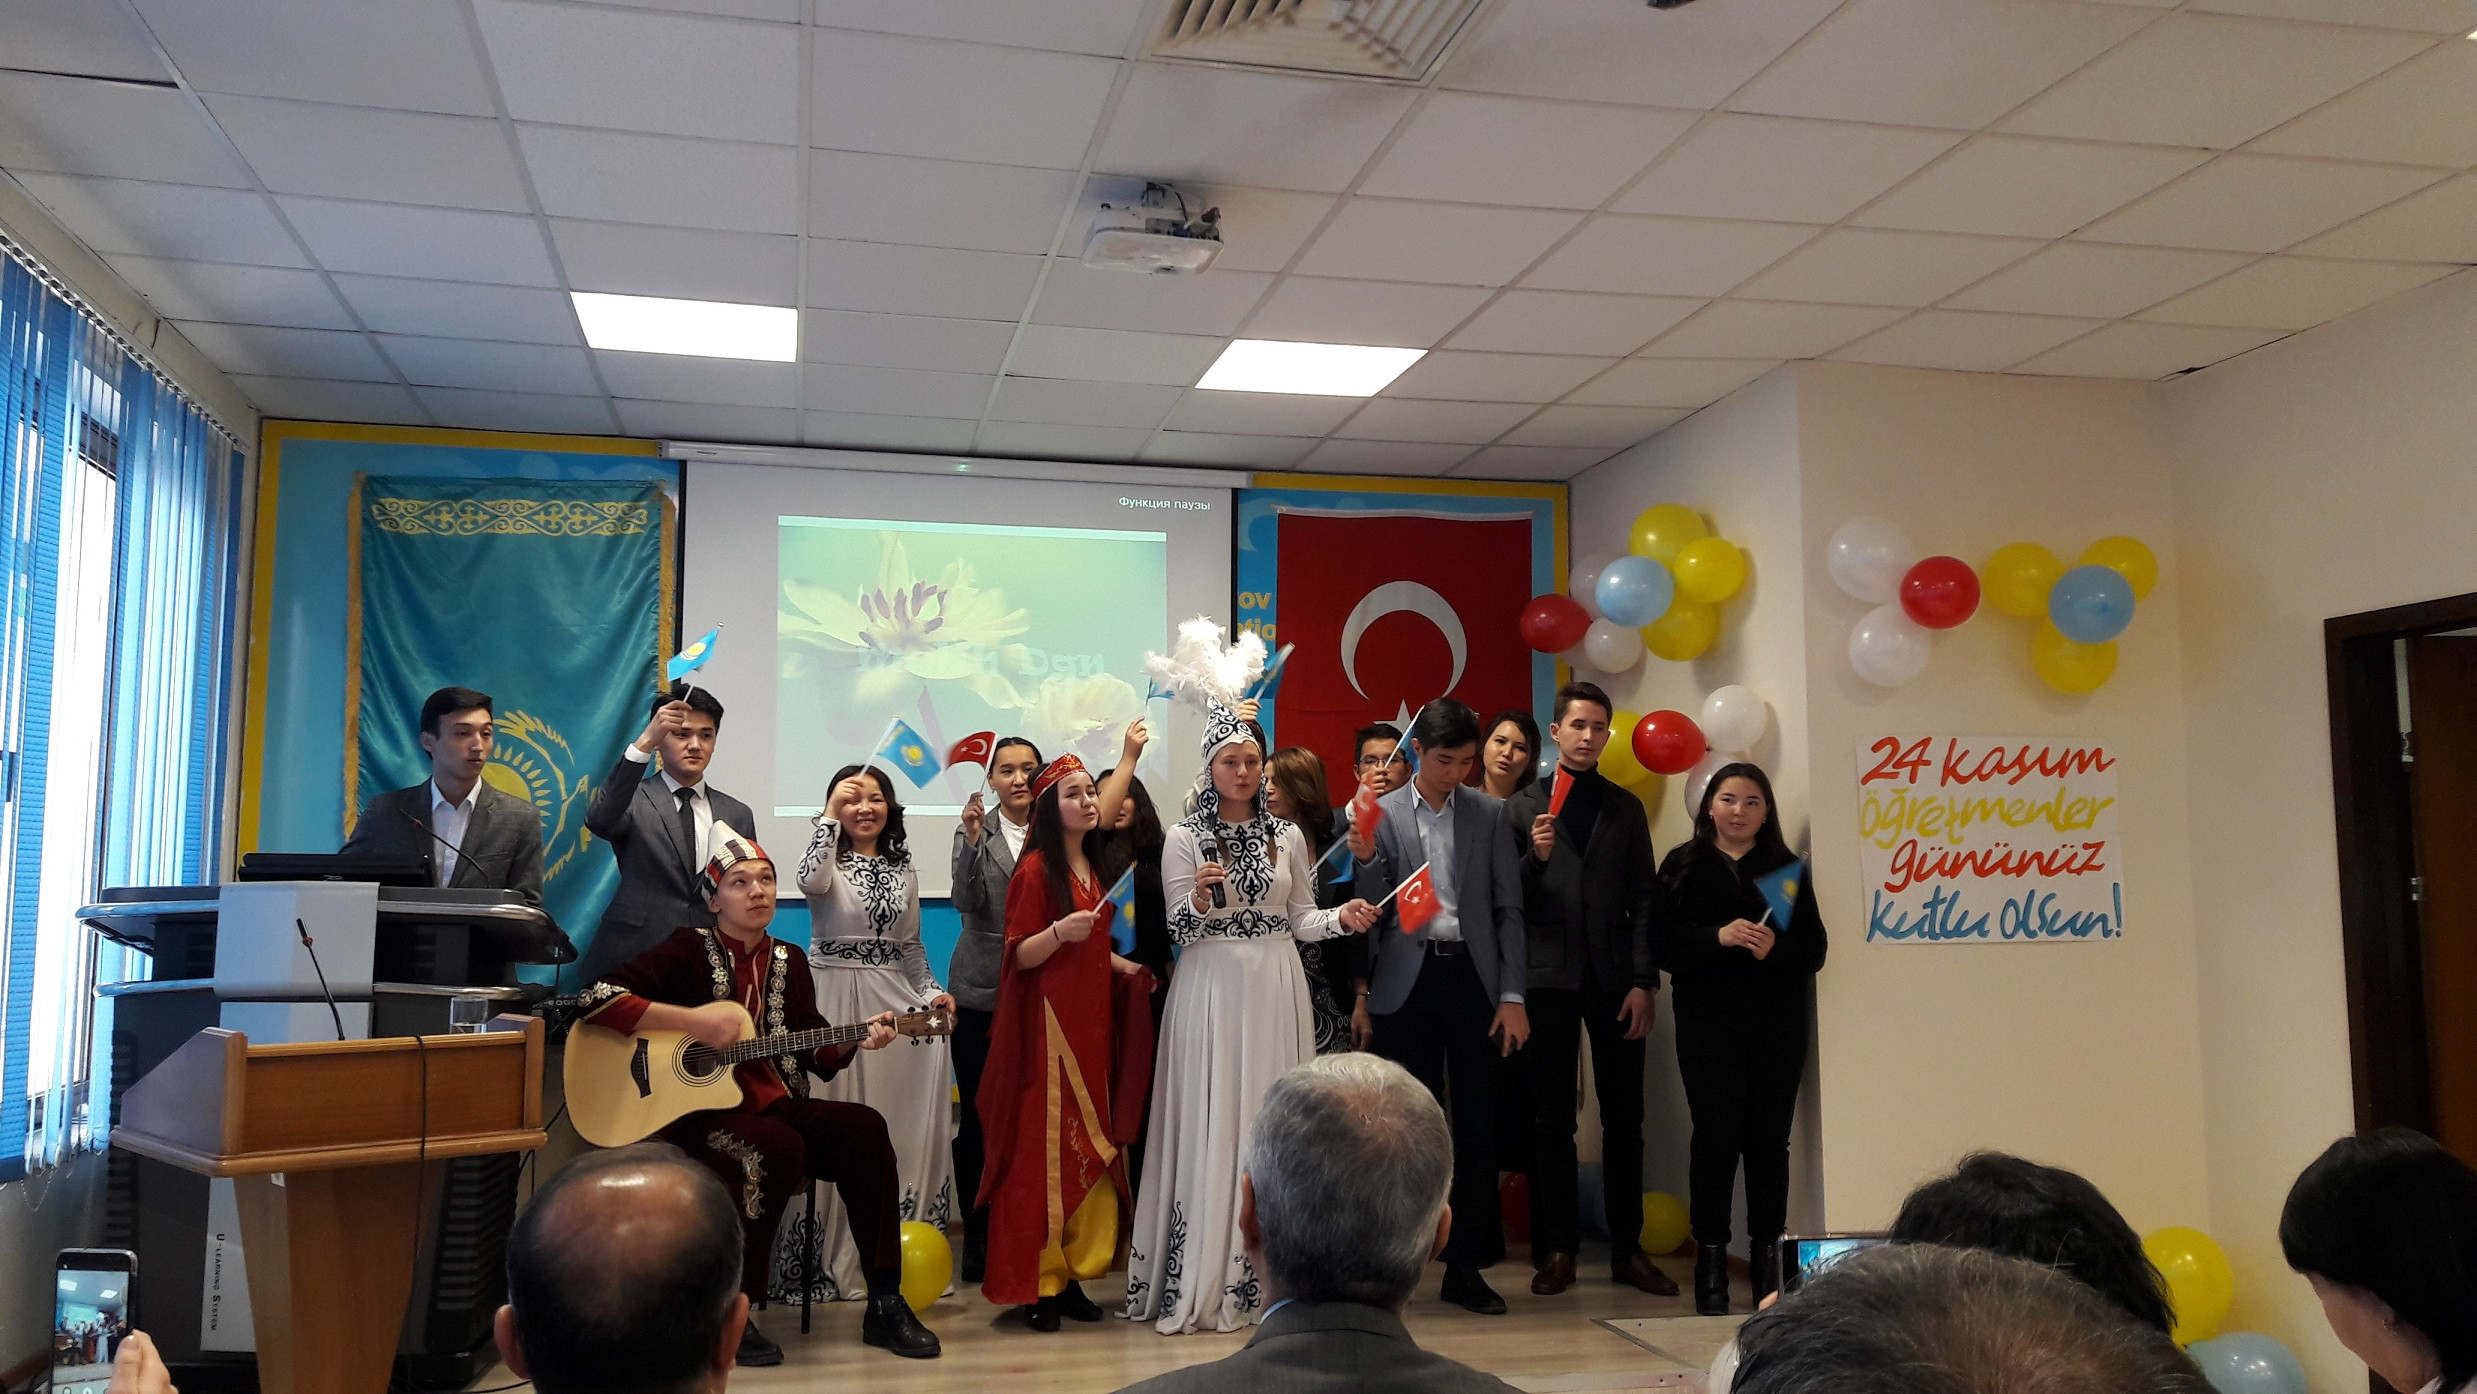 Teacher's Day in Turkey